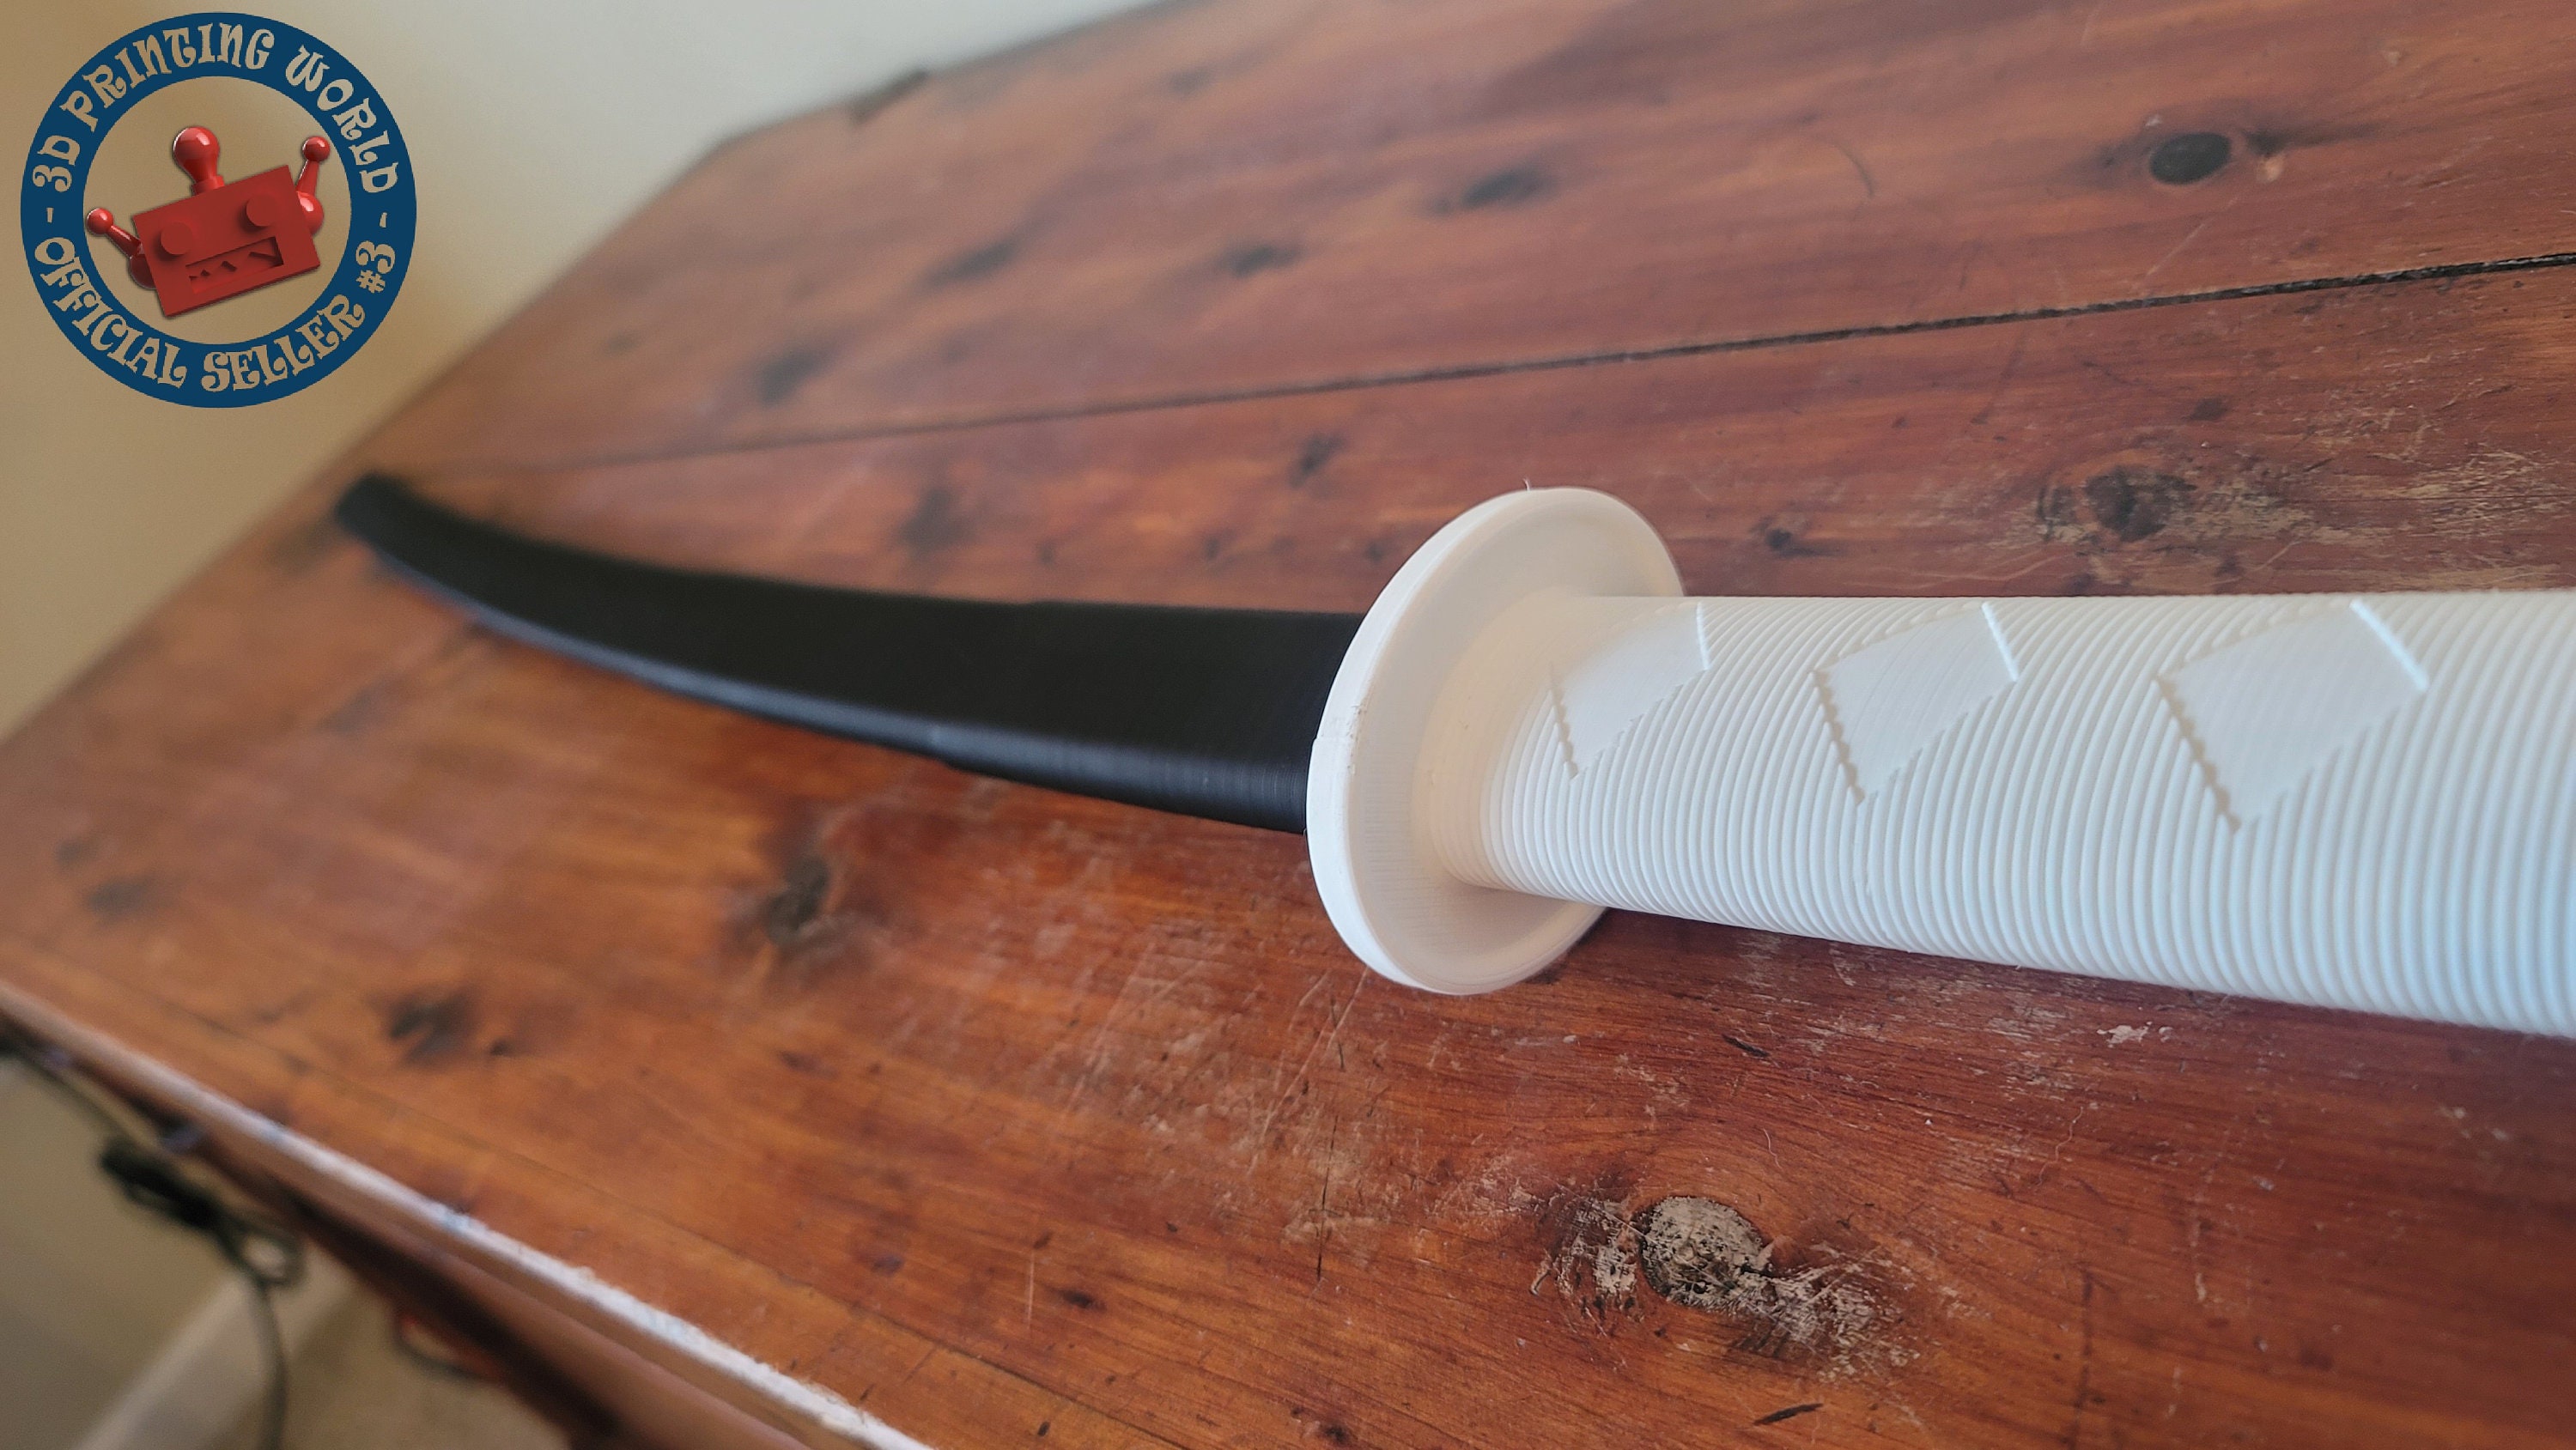 3D printable Collapsible Sword - Épée dépliable - No support